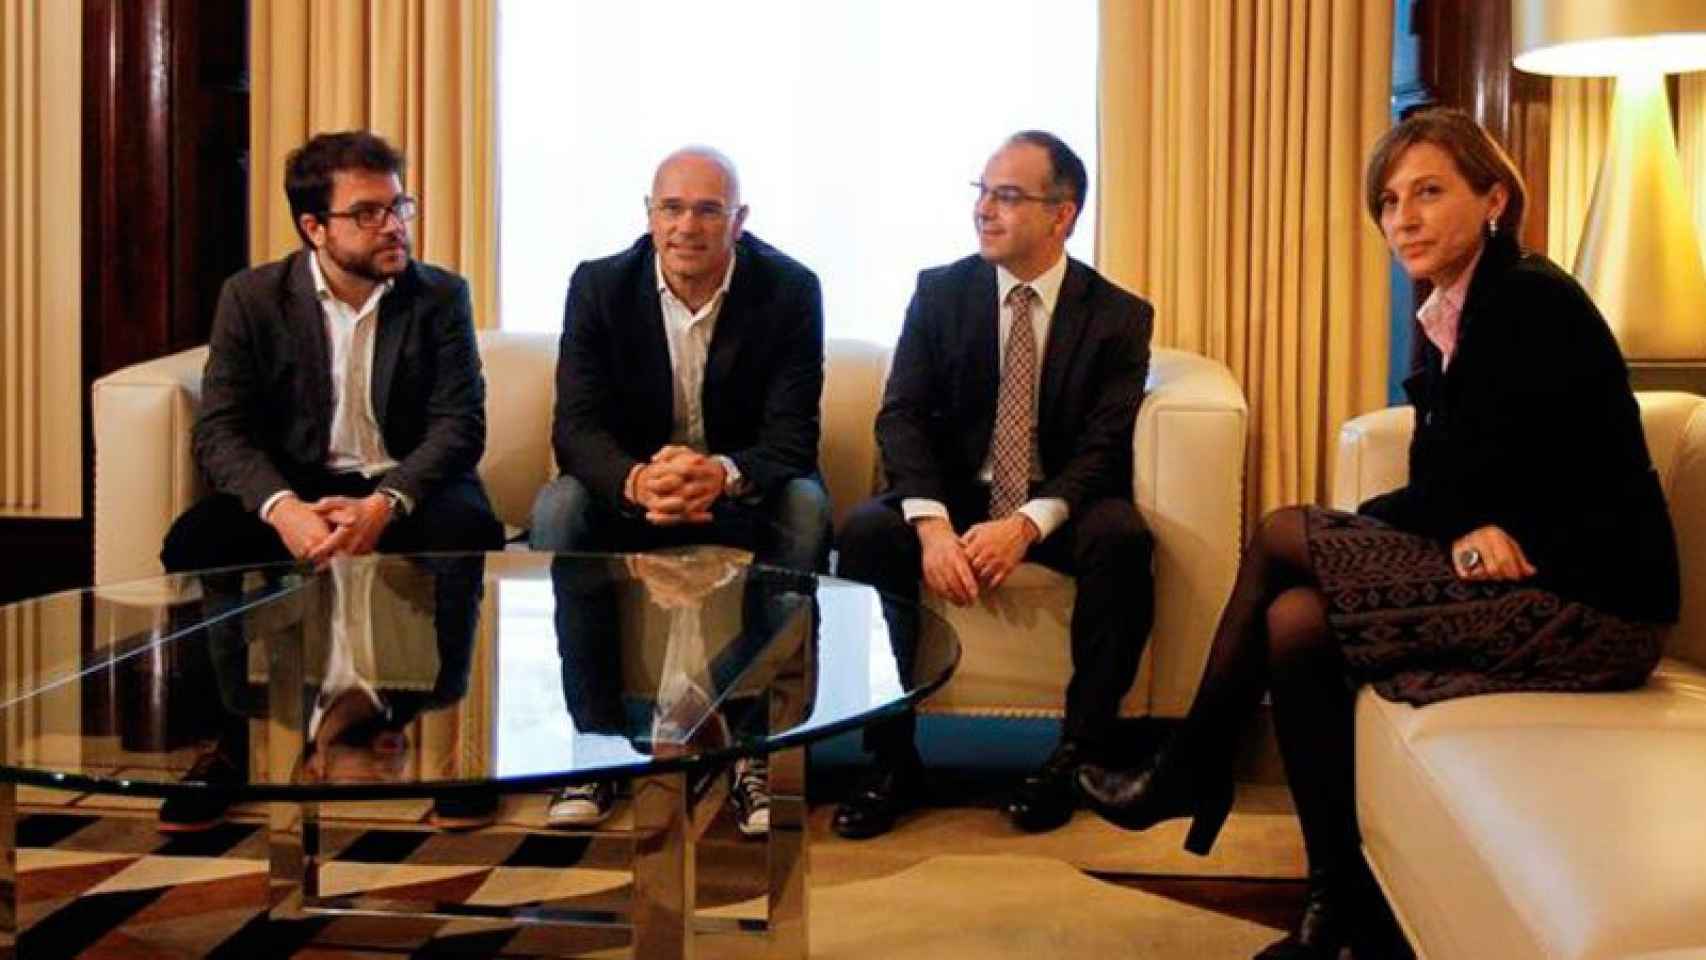 Carme Forcadell recibe a Pere Aragonés, Raül Romeva y Jordi Turull en el Parlament.